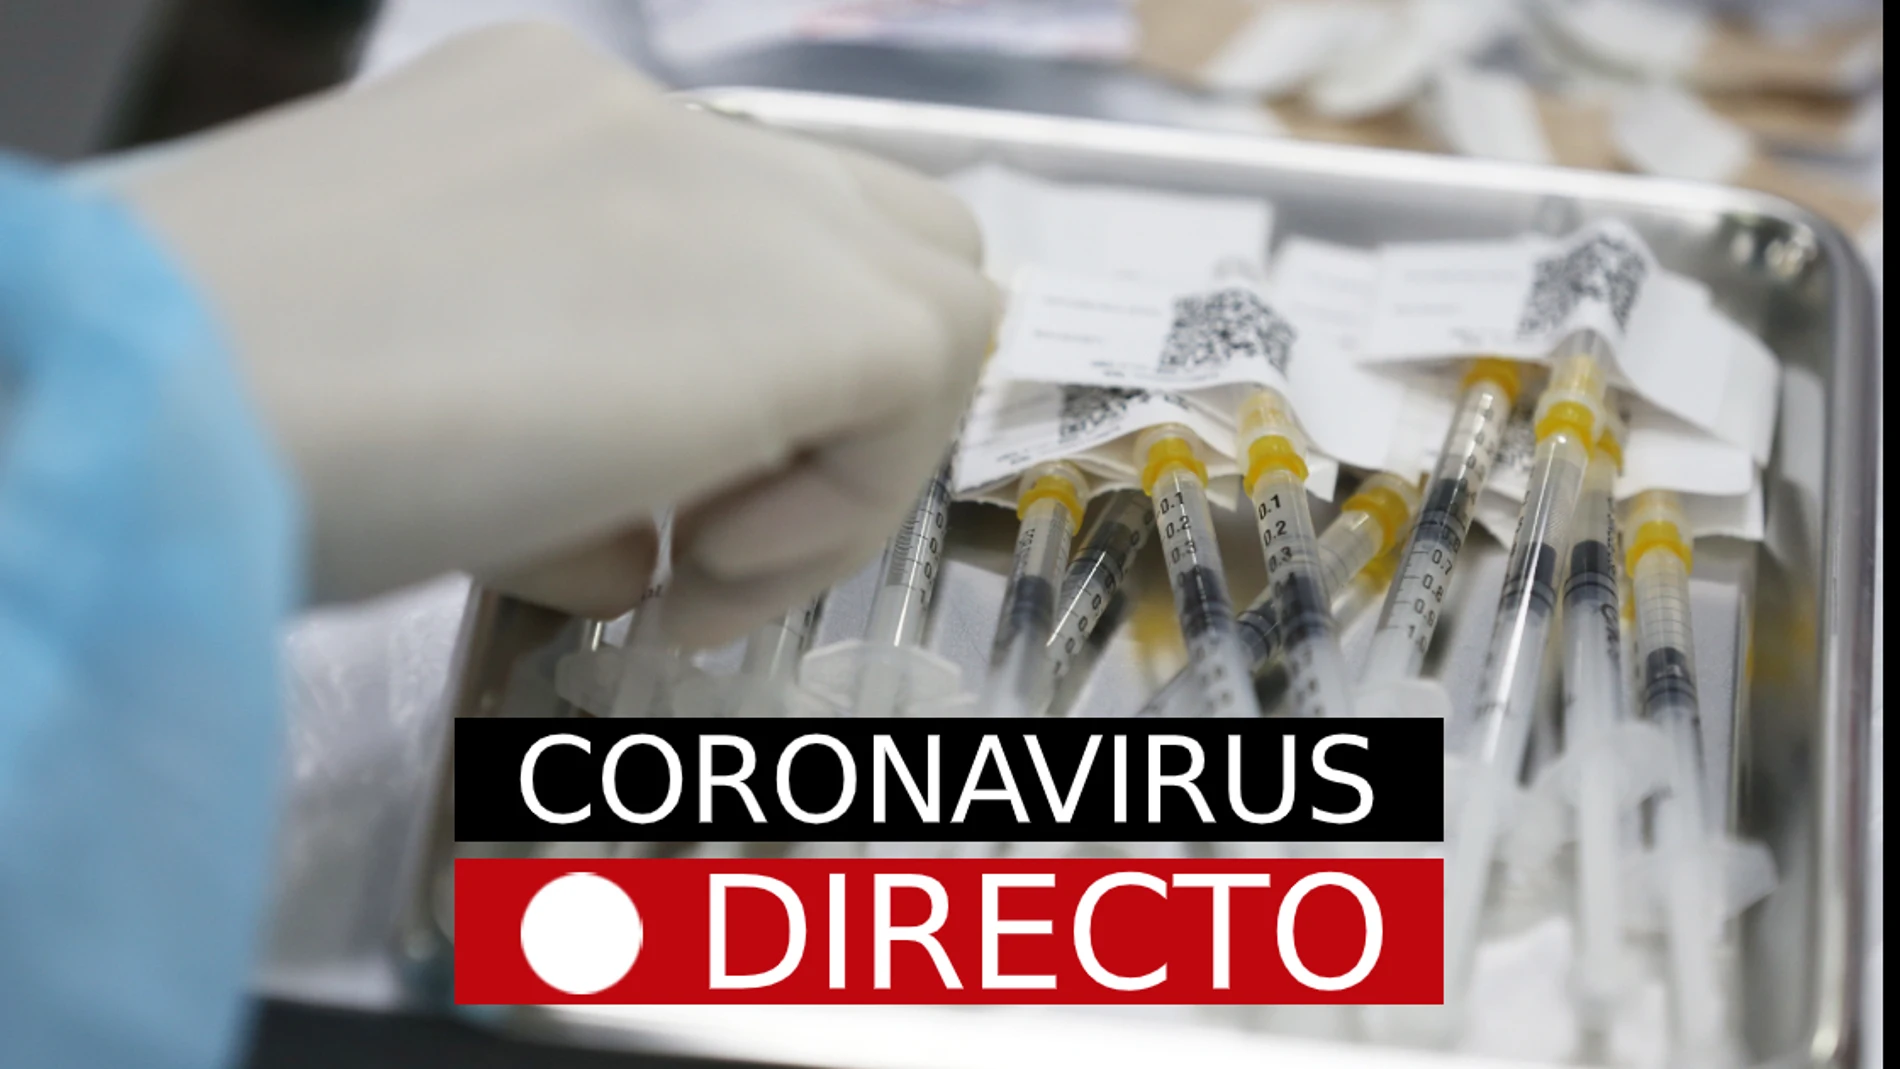 Última hora de coronavirus, hoy: Vacuna, certificado COVID, nuevas medidas y restricciones en España